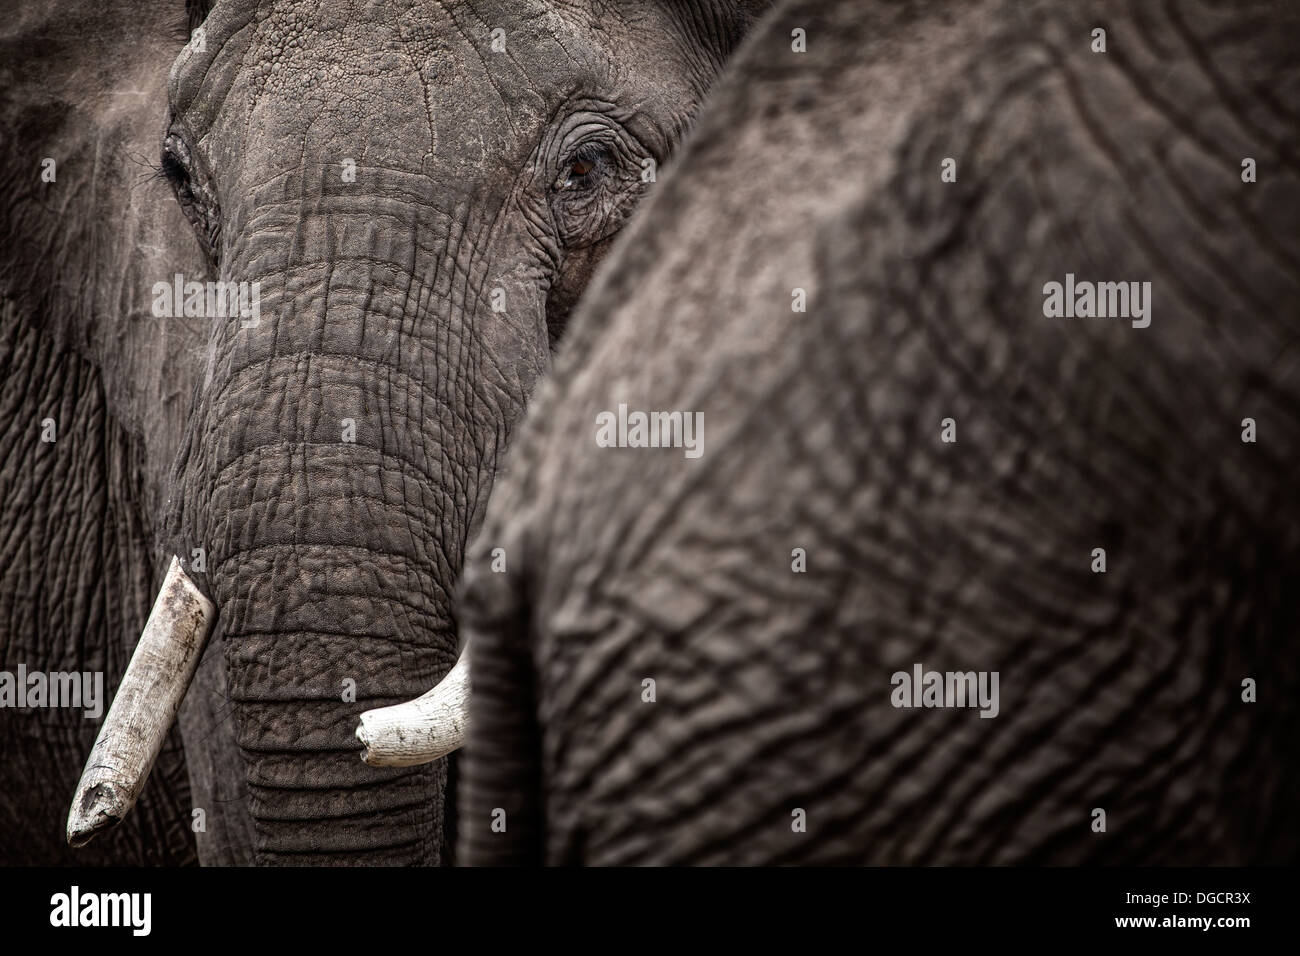 Ein großer Elefant schaut hinter einem anderen Elefanten Stockfoto